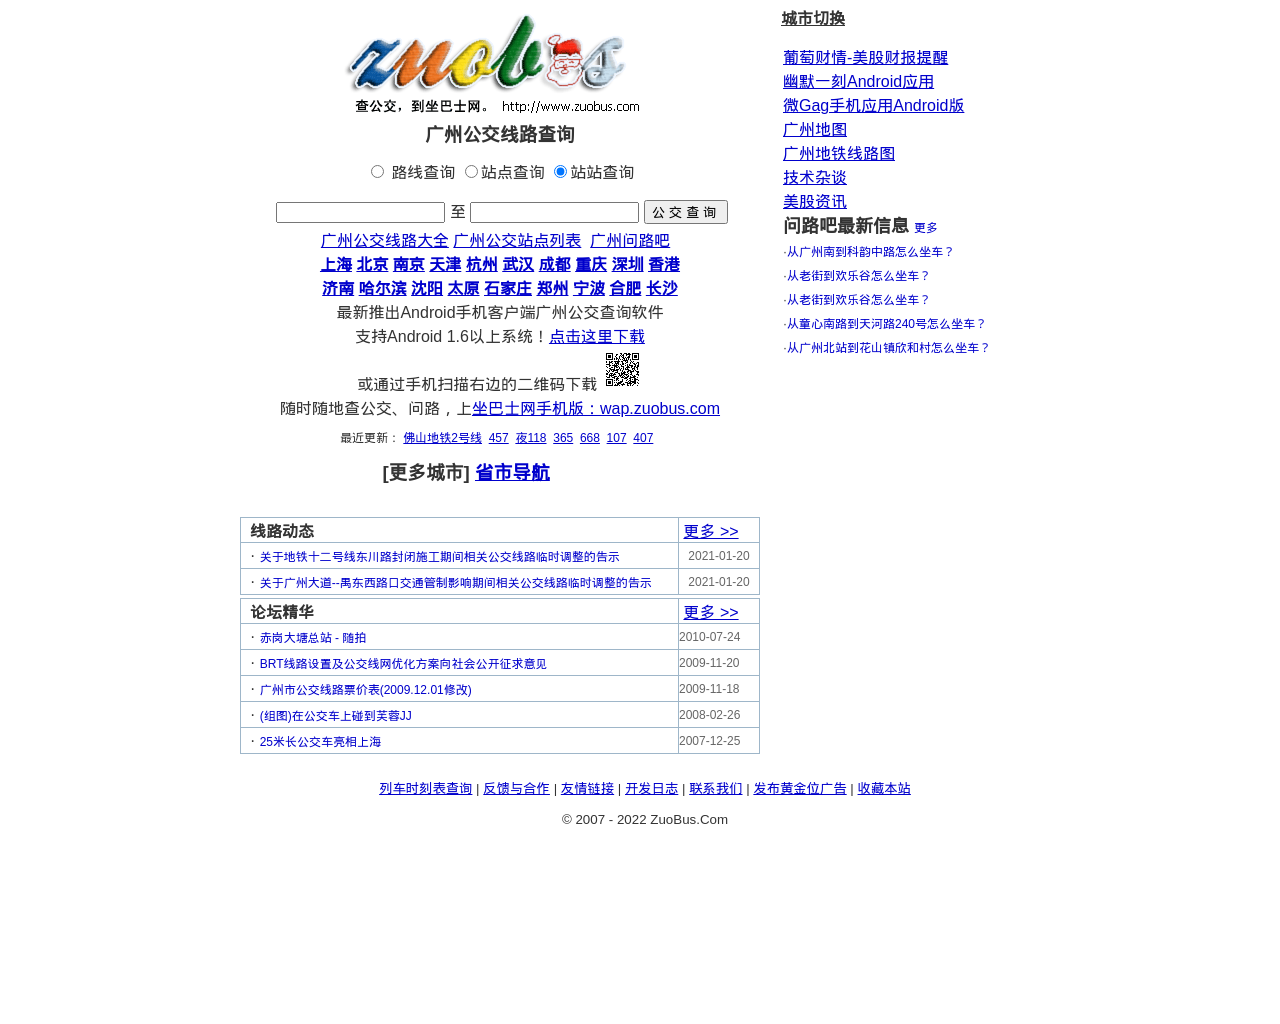 zuobus.com